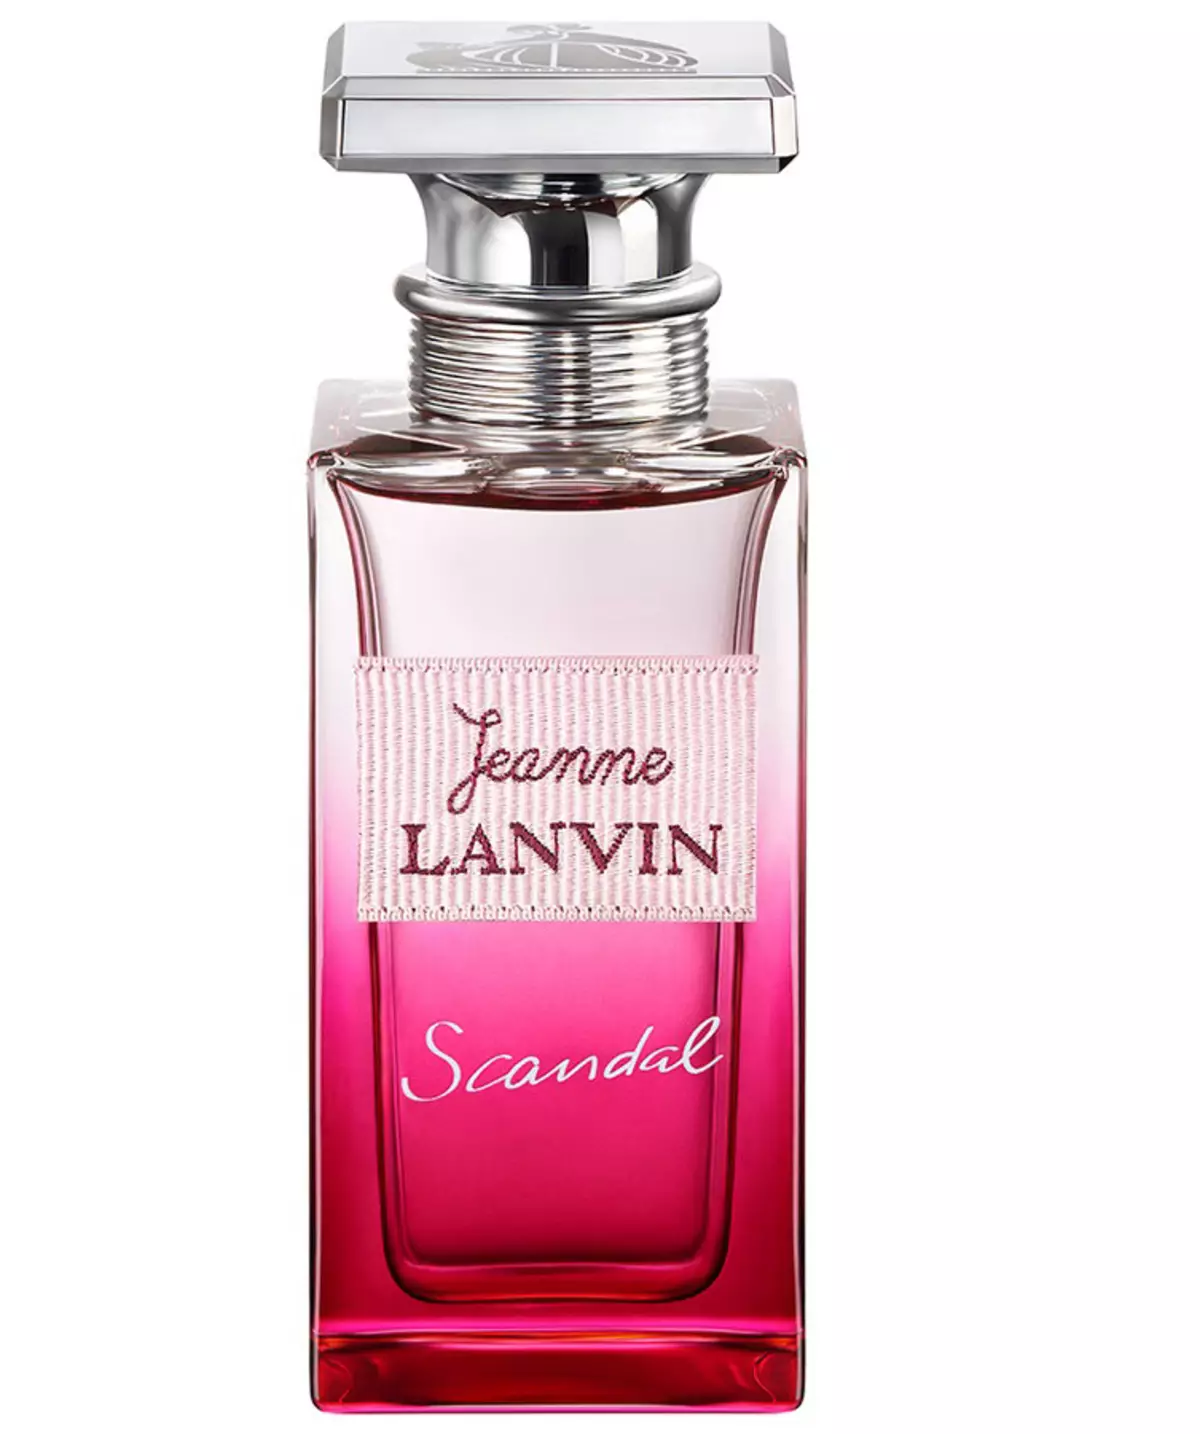 Lanvin parfums (50 foto's): Prefnyske parfum eclat d'Argrege, moderne prinsesse eau Sensuerle en in famke yn Capri, Jeanne-skandaal en oare smaken 25158_21